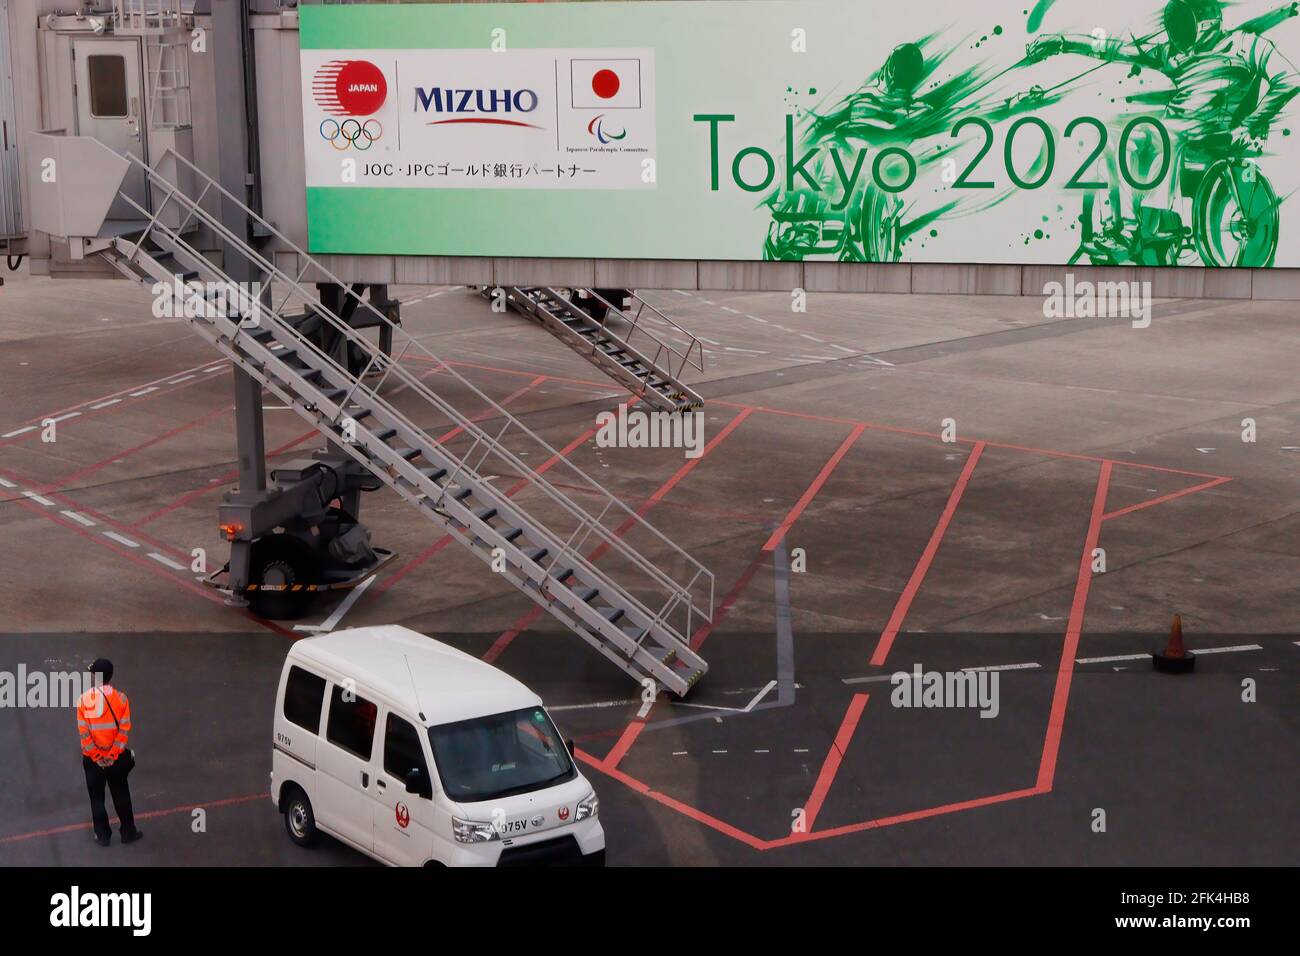 April 25, 2021, Tokyo, Japan: A Tokyo Olympics 2020 billboard seen at Tokyo Haneda International Airport. (Credit Image: © James Matsumoto/SOPA Images via ZUMA Wire) Stock Photo